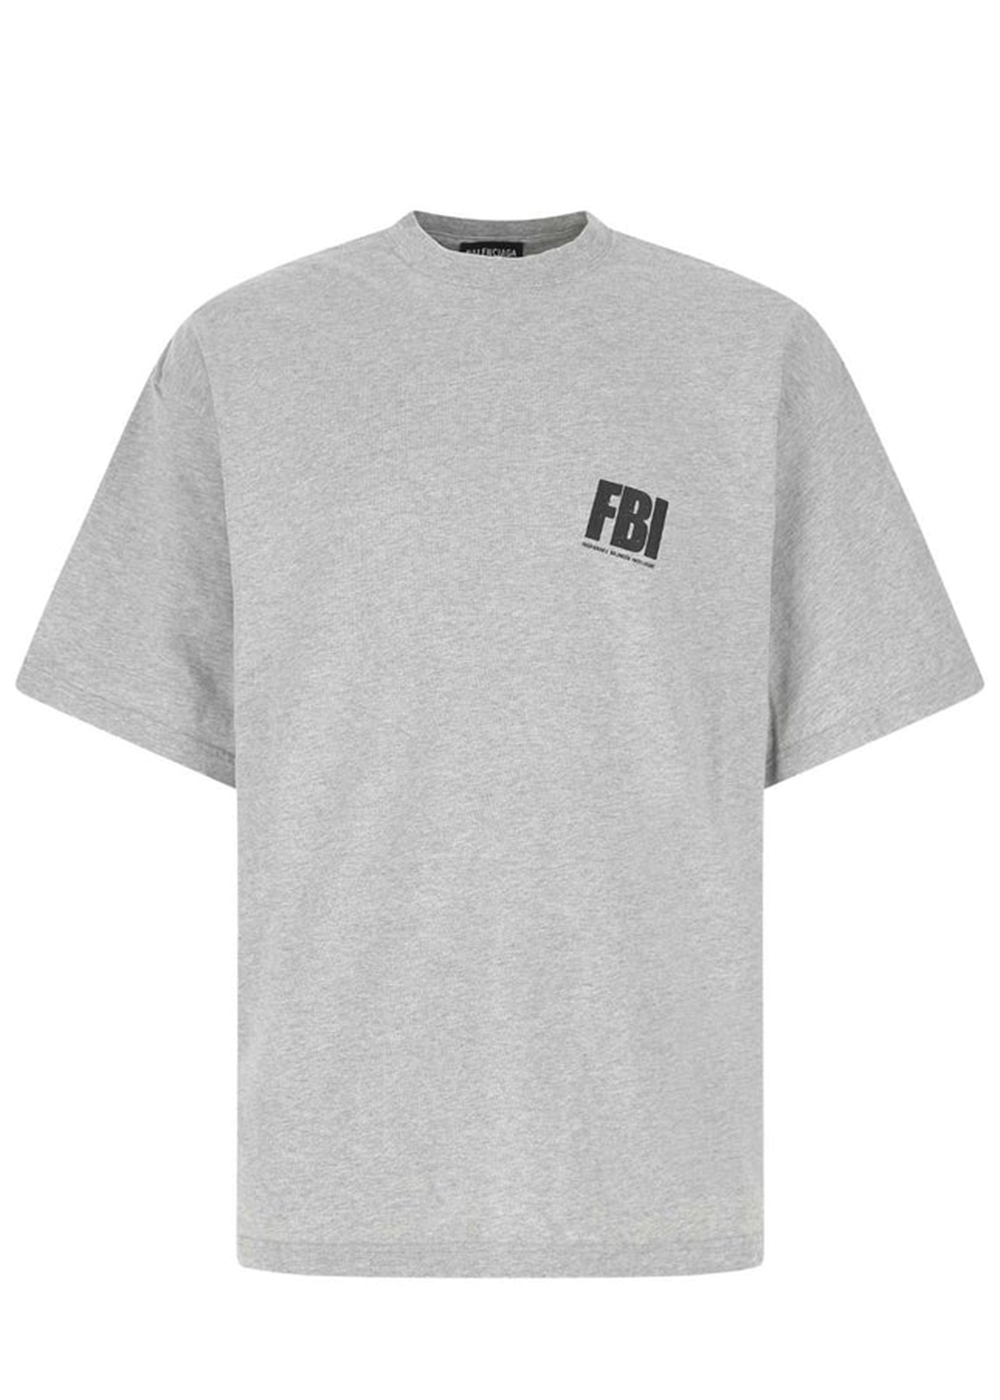 【新品】BALENCIAGA FBI Tシャツ オーバーサイズ グレー